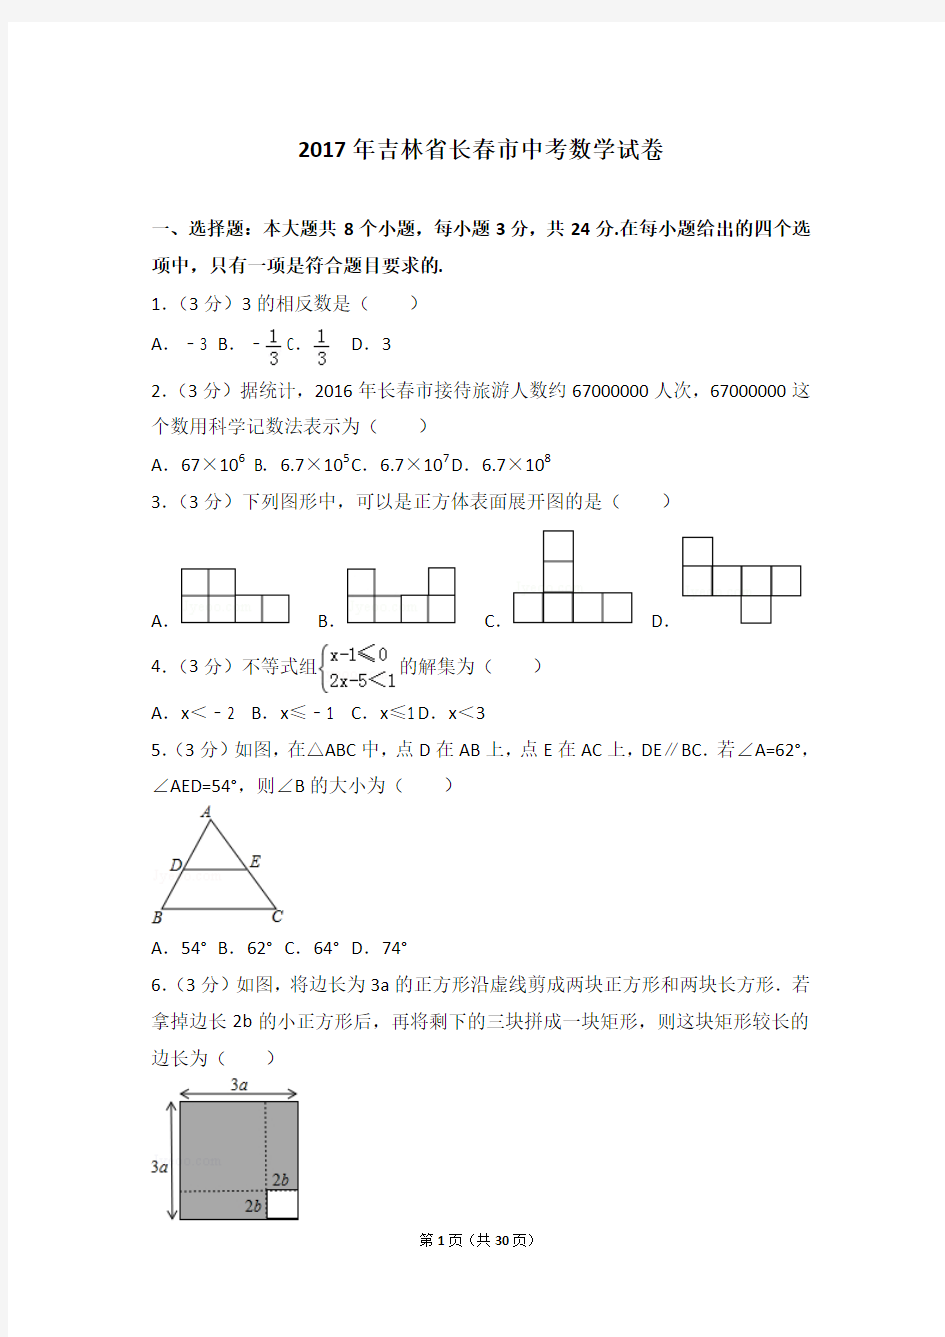 2017年吉林省长春市中考数学试卷及答案解析(含答题卡)